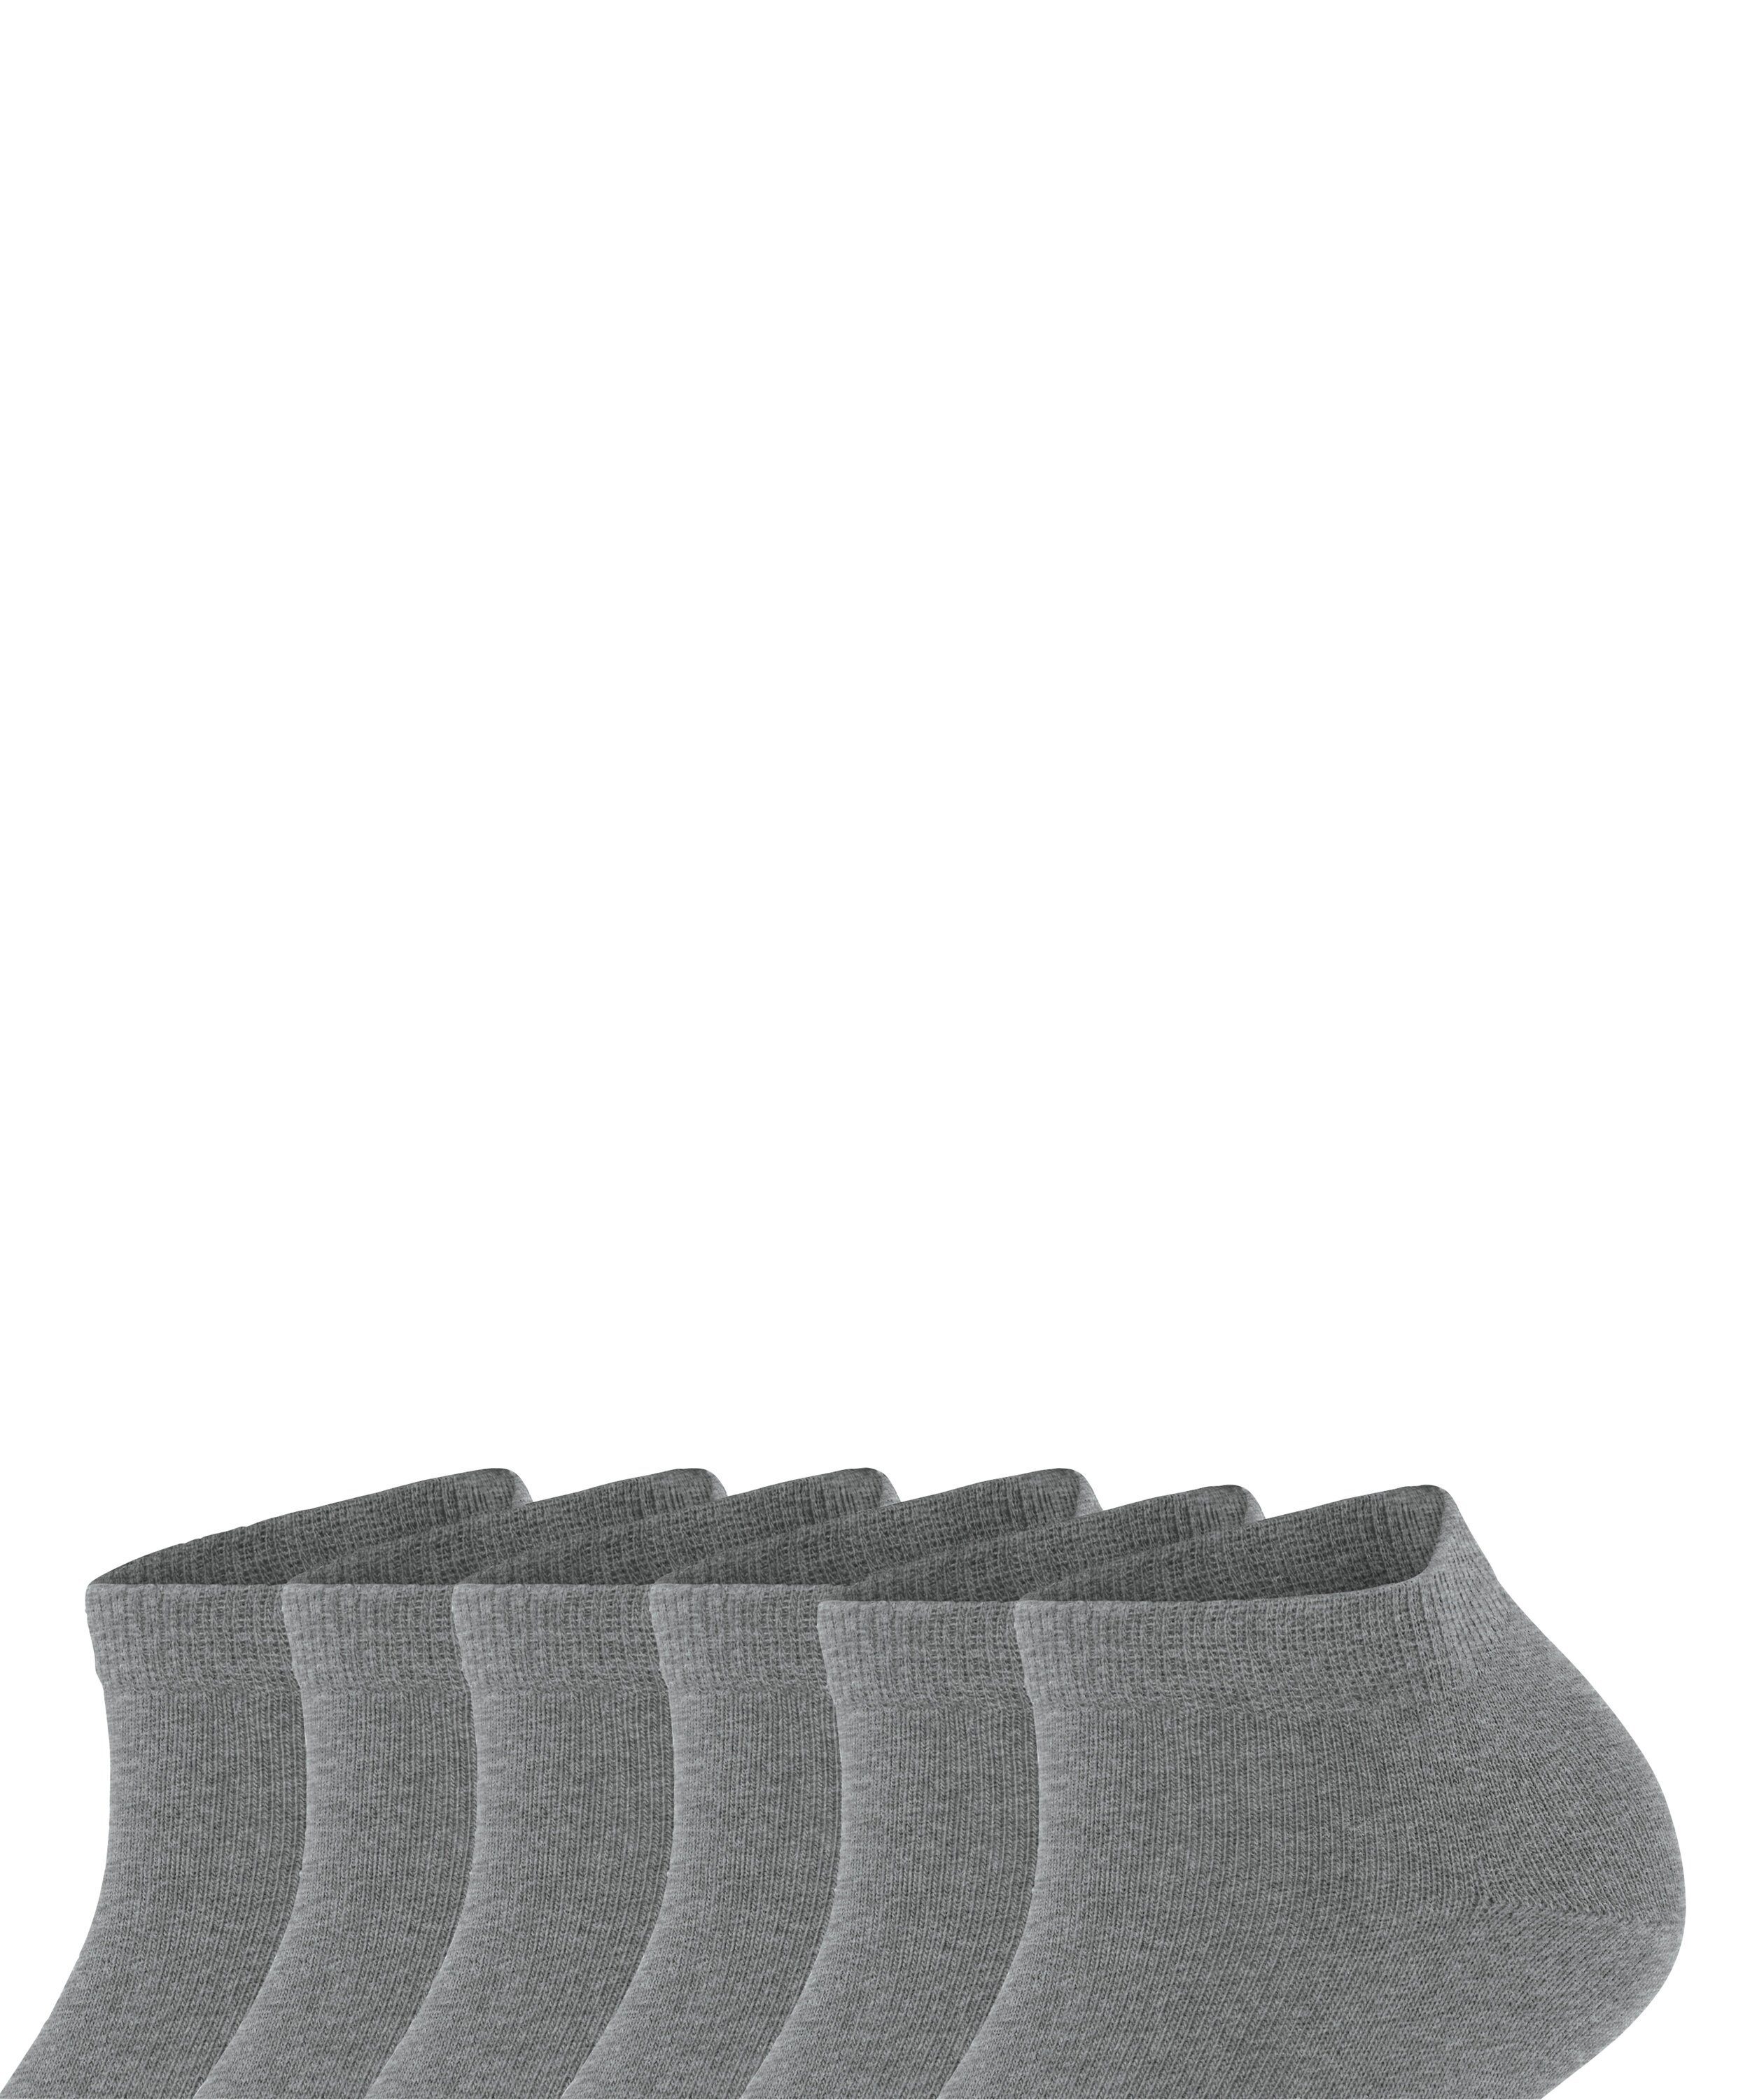 FALKE Sneakersocken Happy Bundle 6-Pack 6 (3390) Set Baumwollsneakern greymel. Paar light (6-Paar) aus